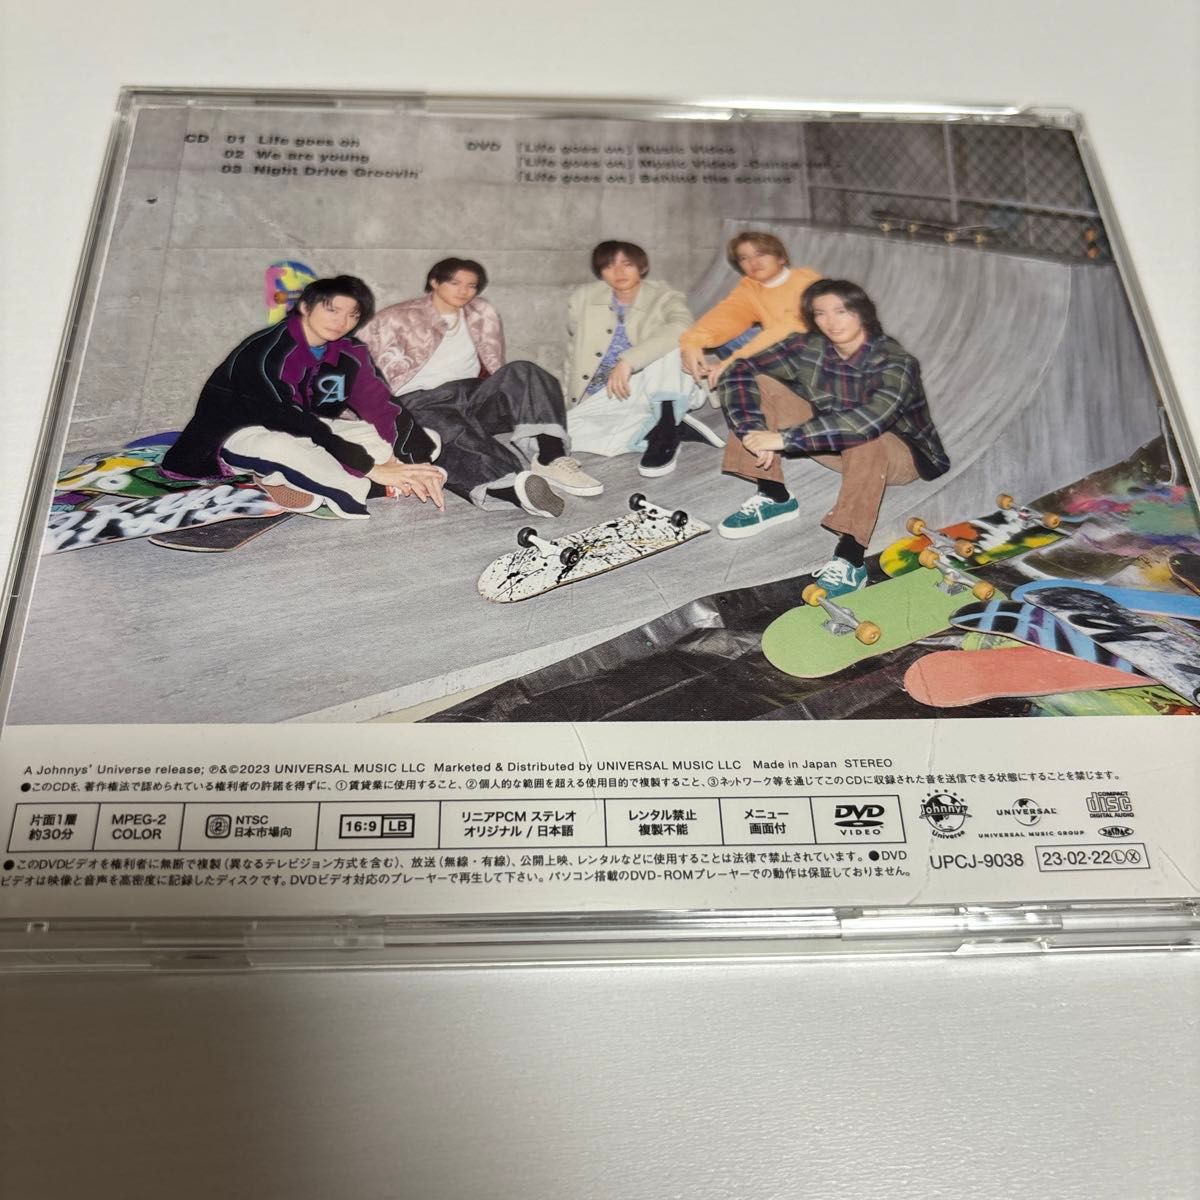 初回限定盤A DVD付 King & Prince CD+DVD/Life goes on/We are young